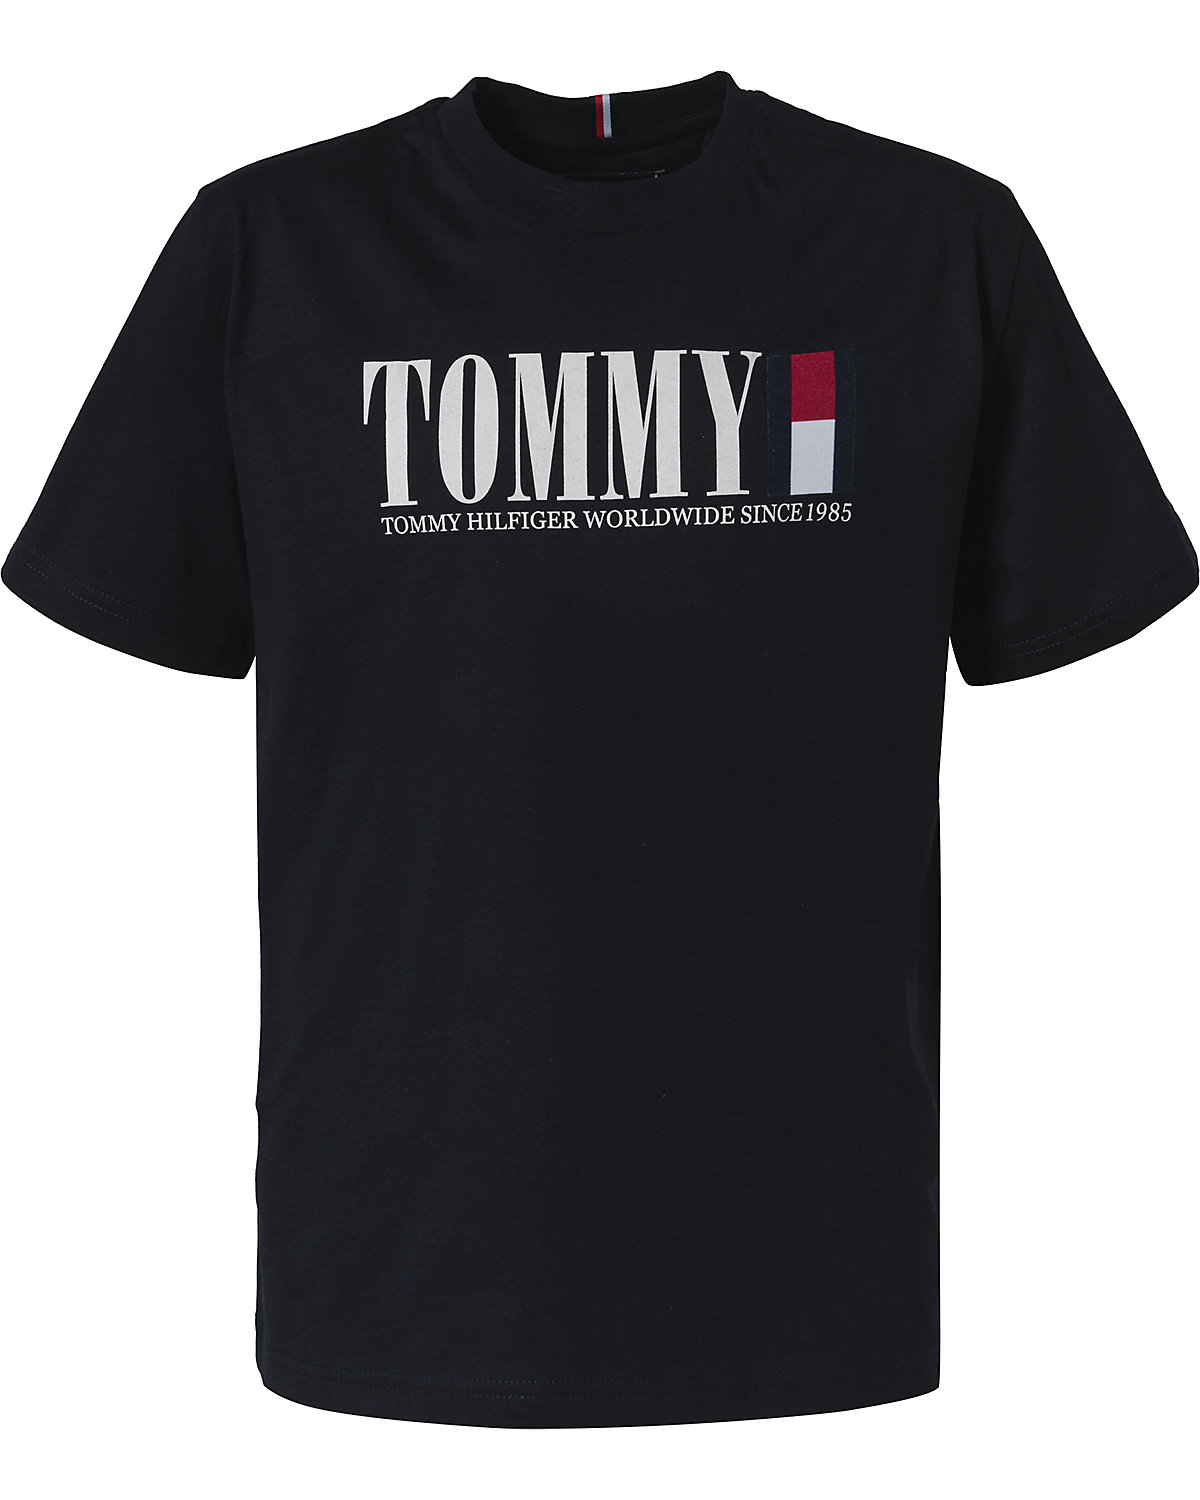 TOMMY HILFIGER T-Shirt für Jungen